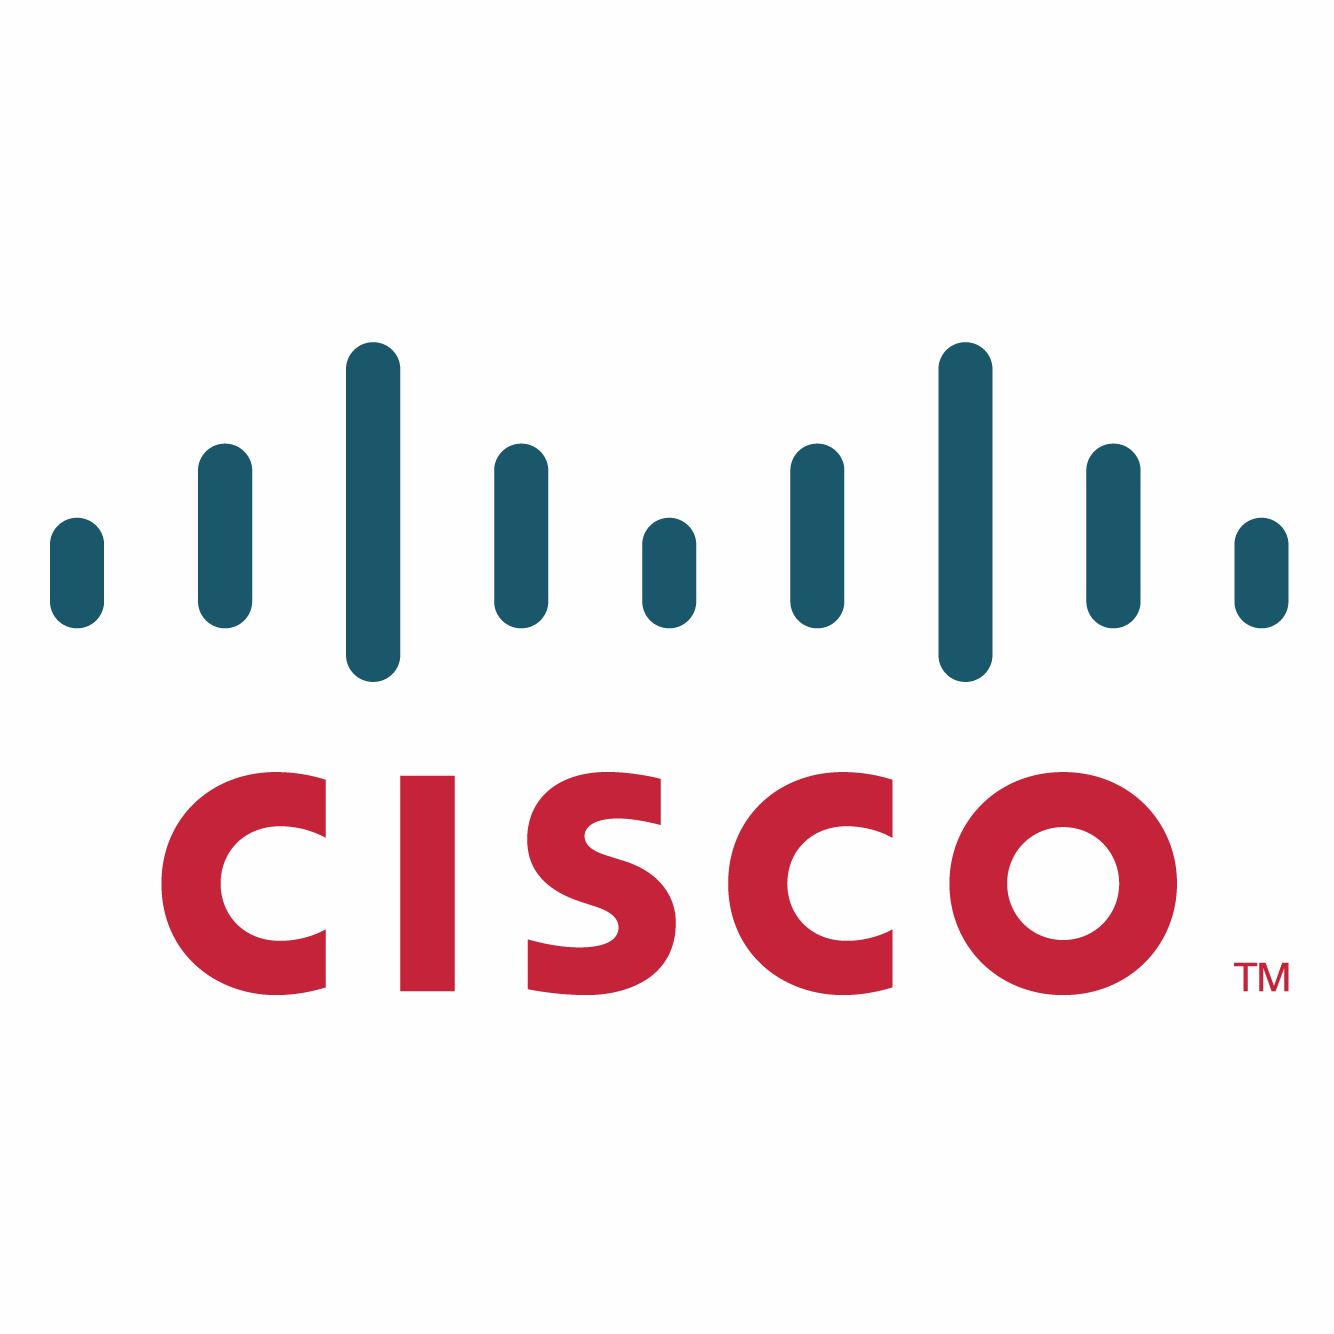 https://securetech.local/wp-content/uploads/2019/02/04.CISCO_.png